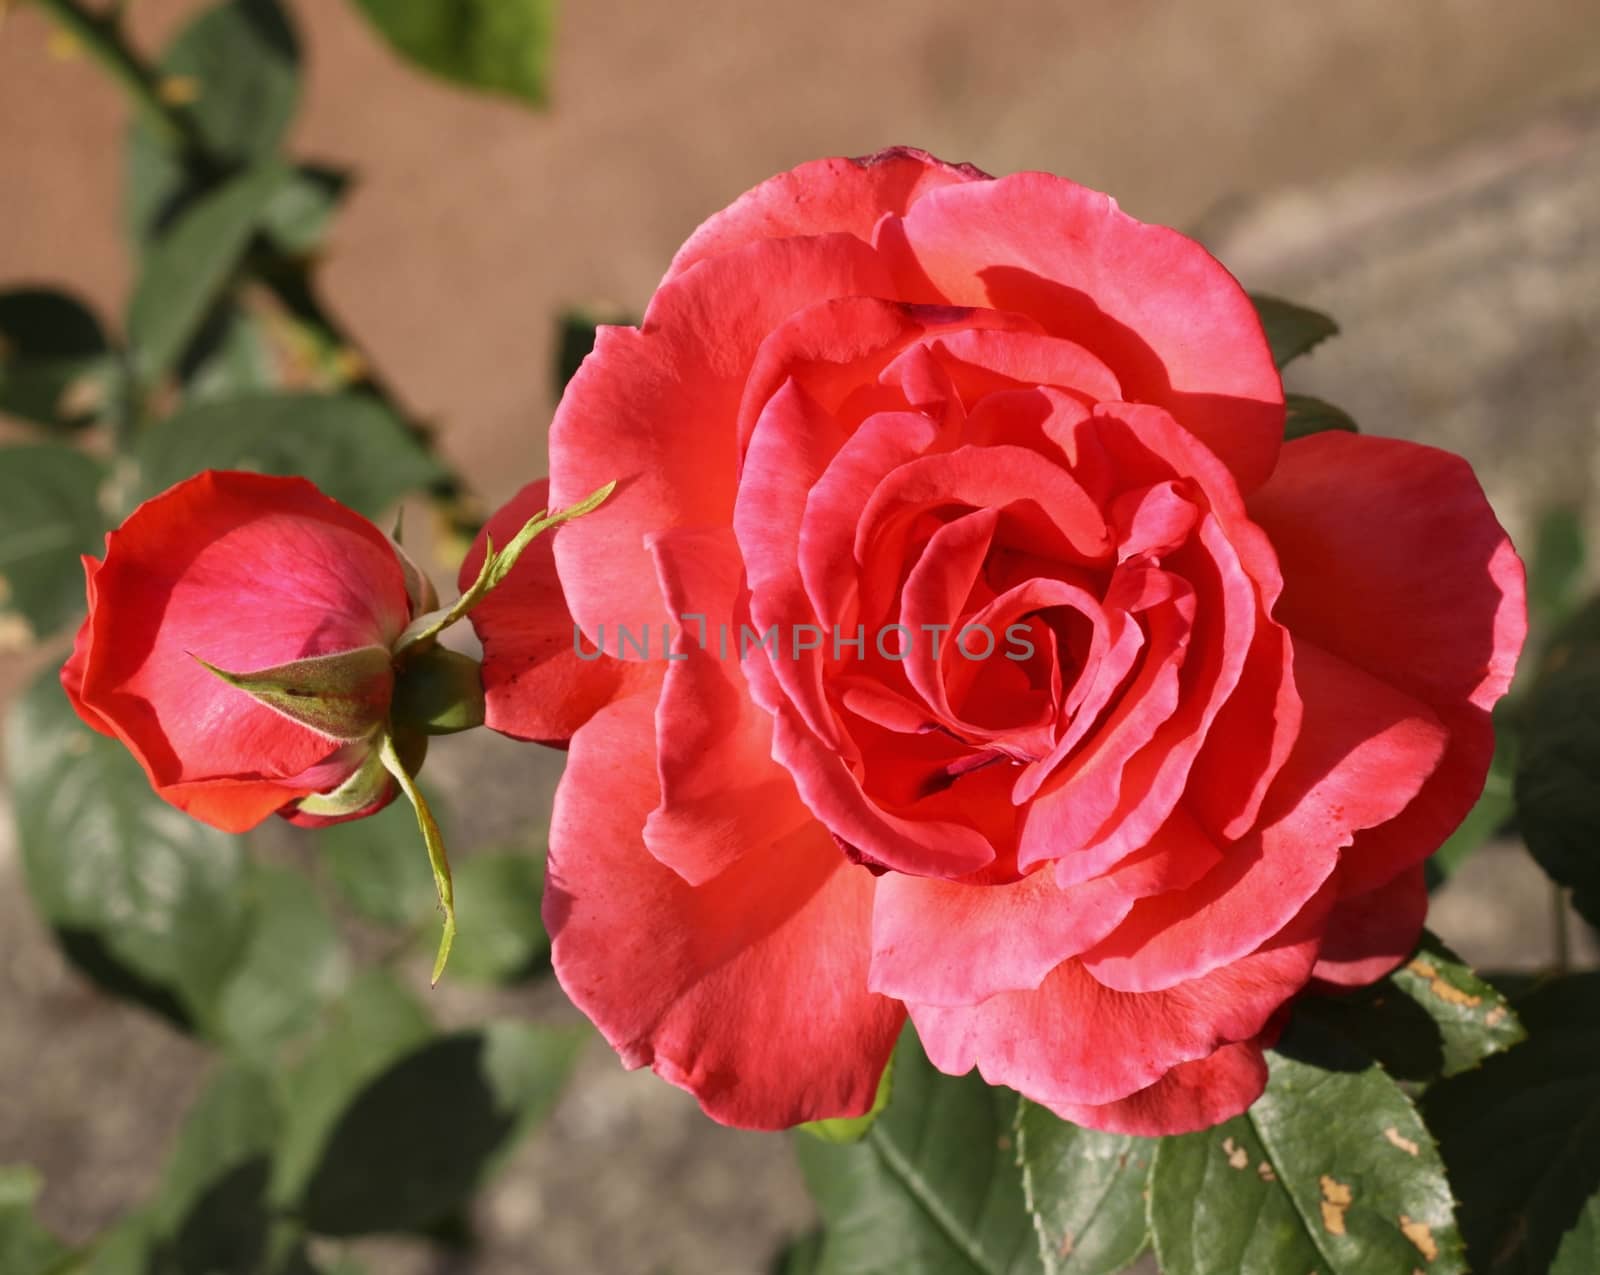 Beautiful romantic roses by jnerad